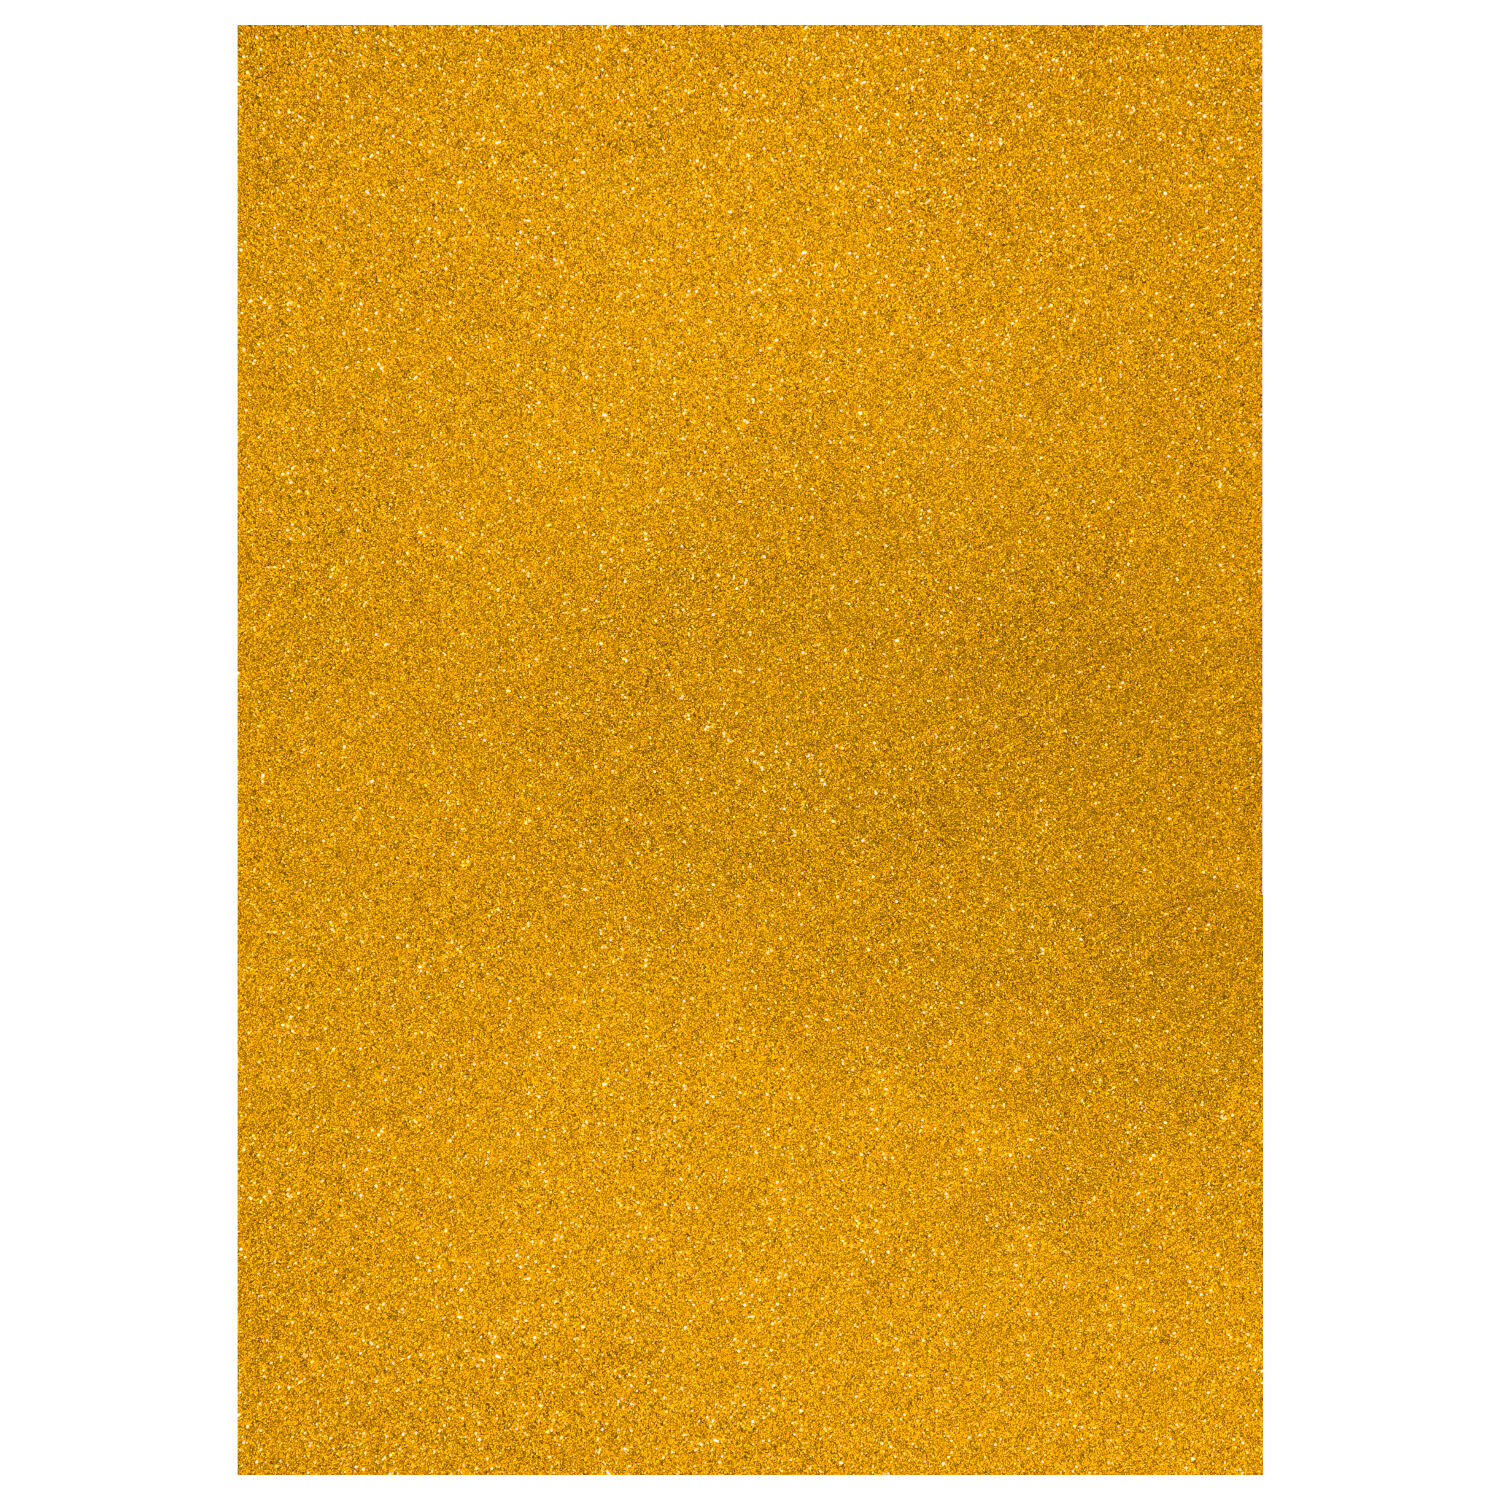 NEU Glitter-Karton, 200 g/qm, einseitig mit Glitzer, DIN A4, Gelbgold